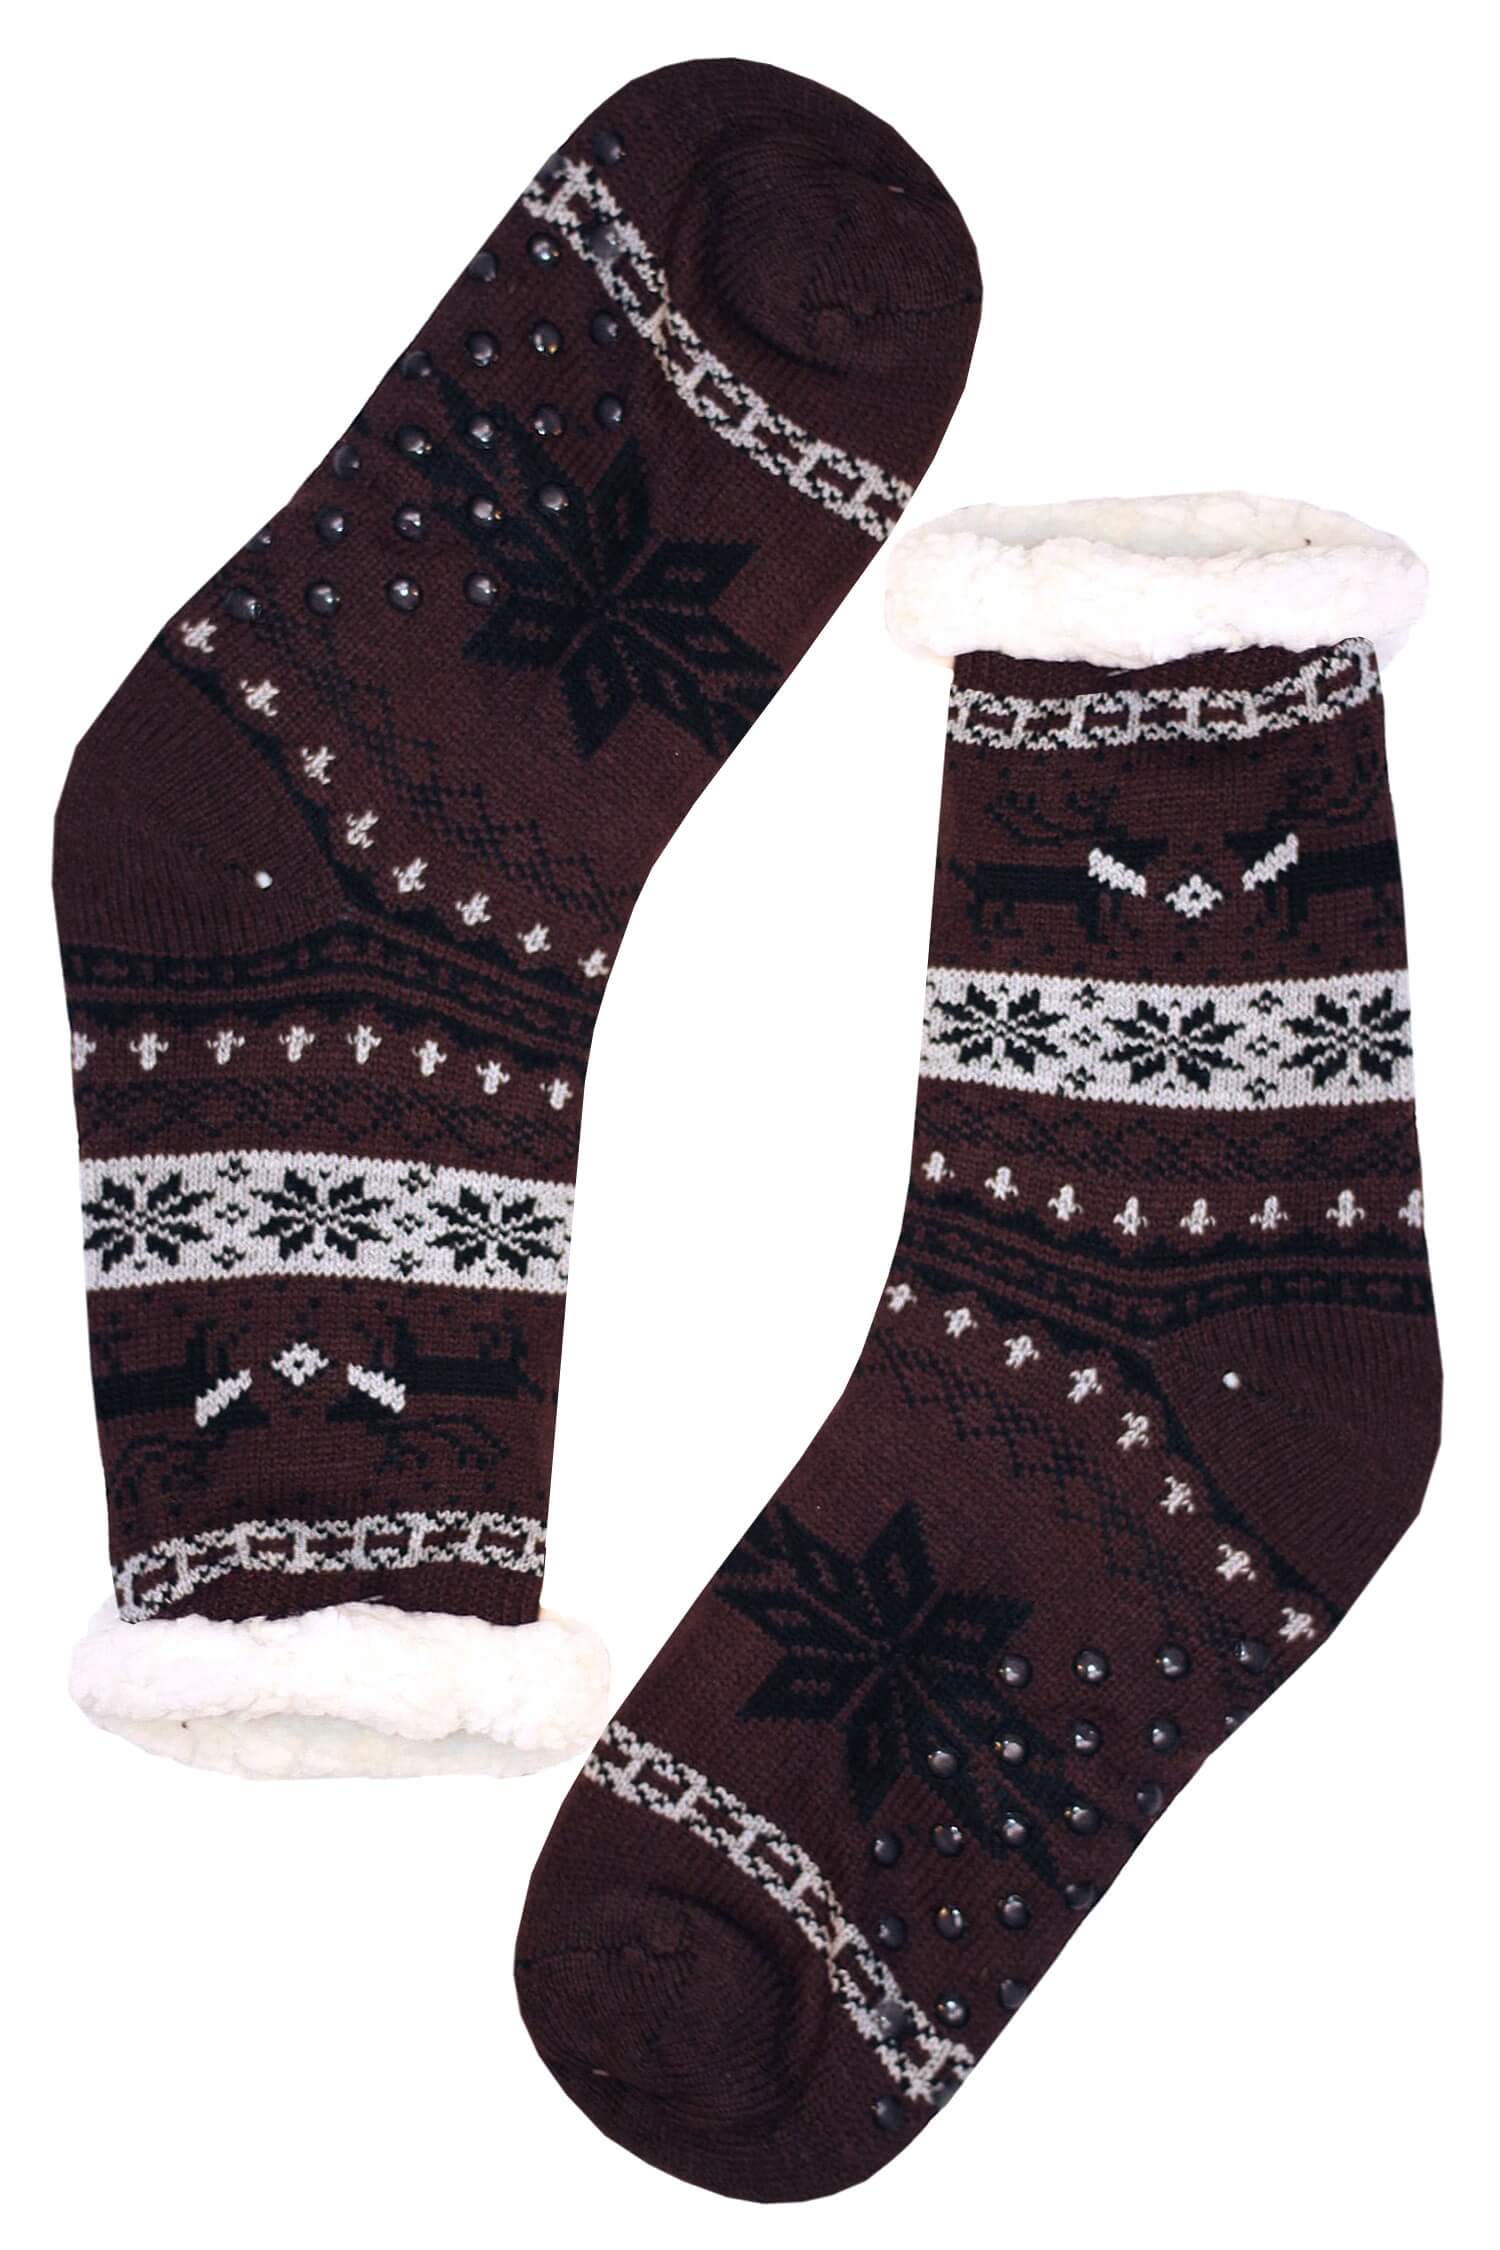 Polaros brown teplé ponožky s beránkem MC 112 39-42 hnědá